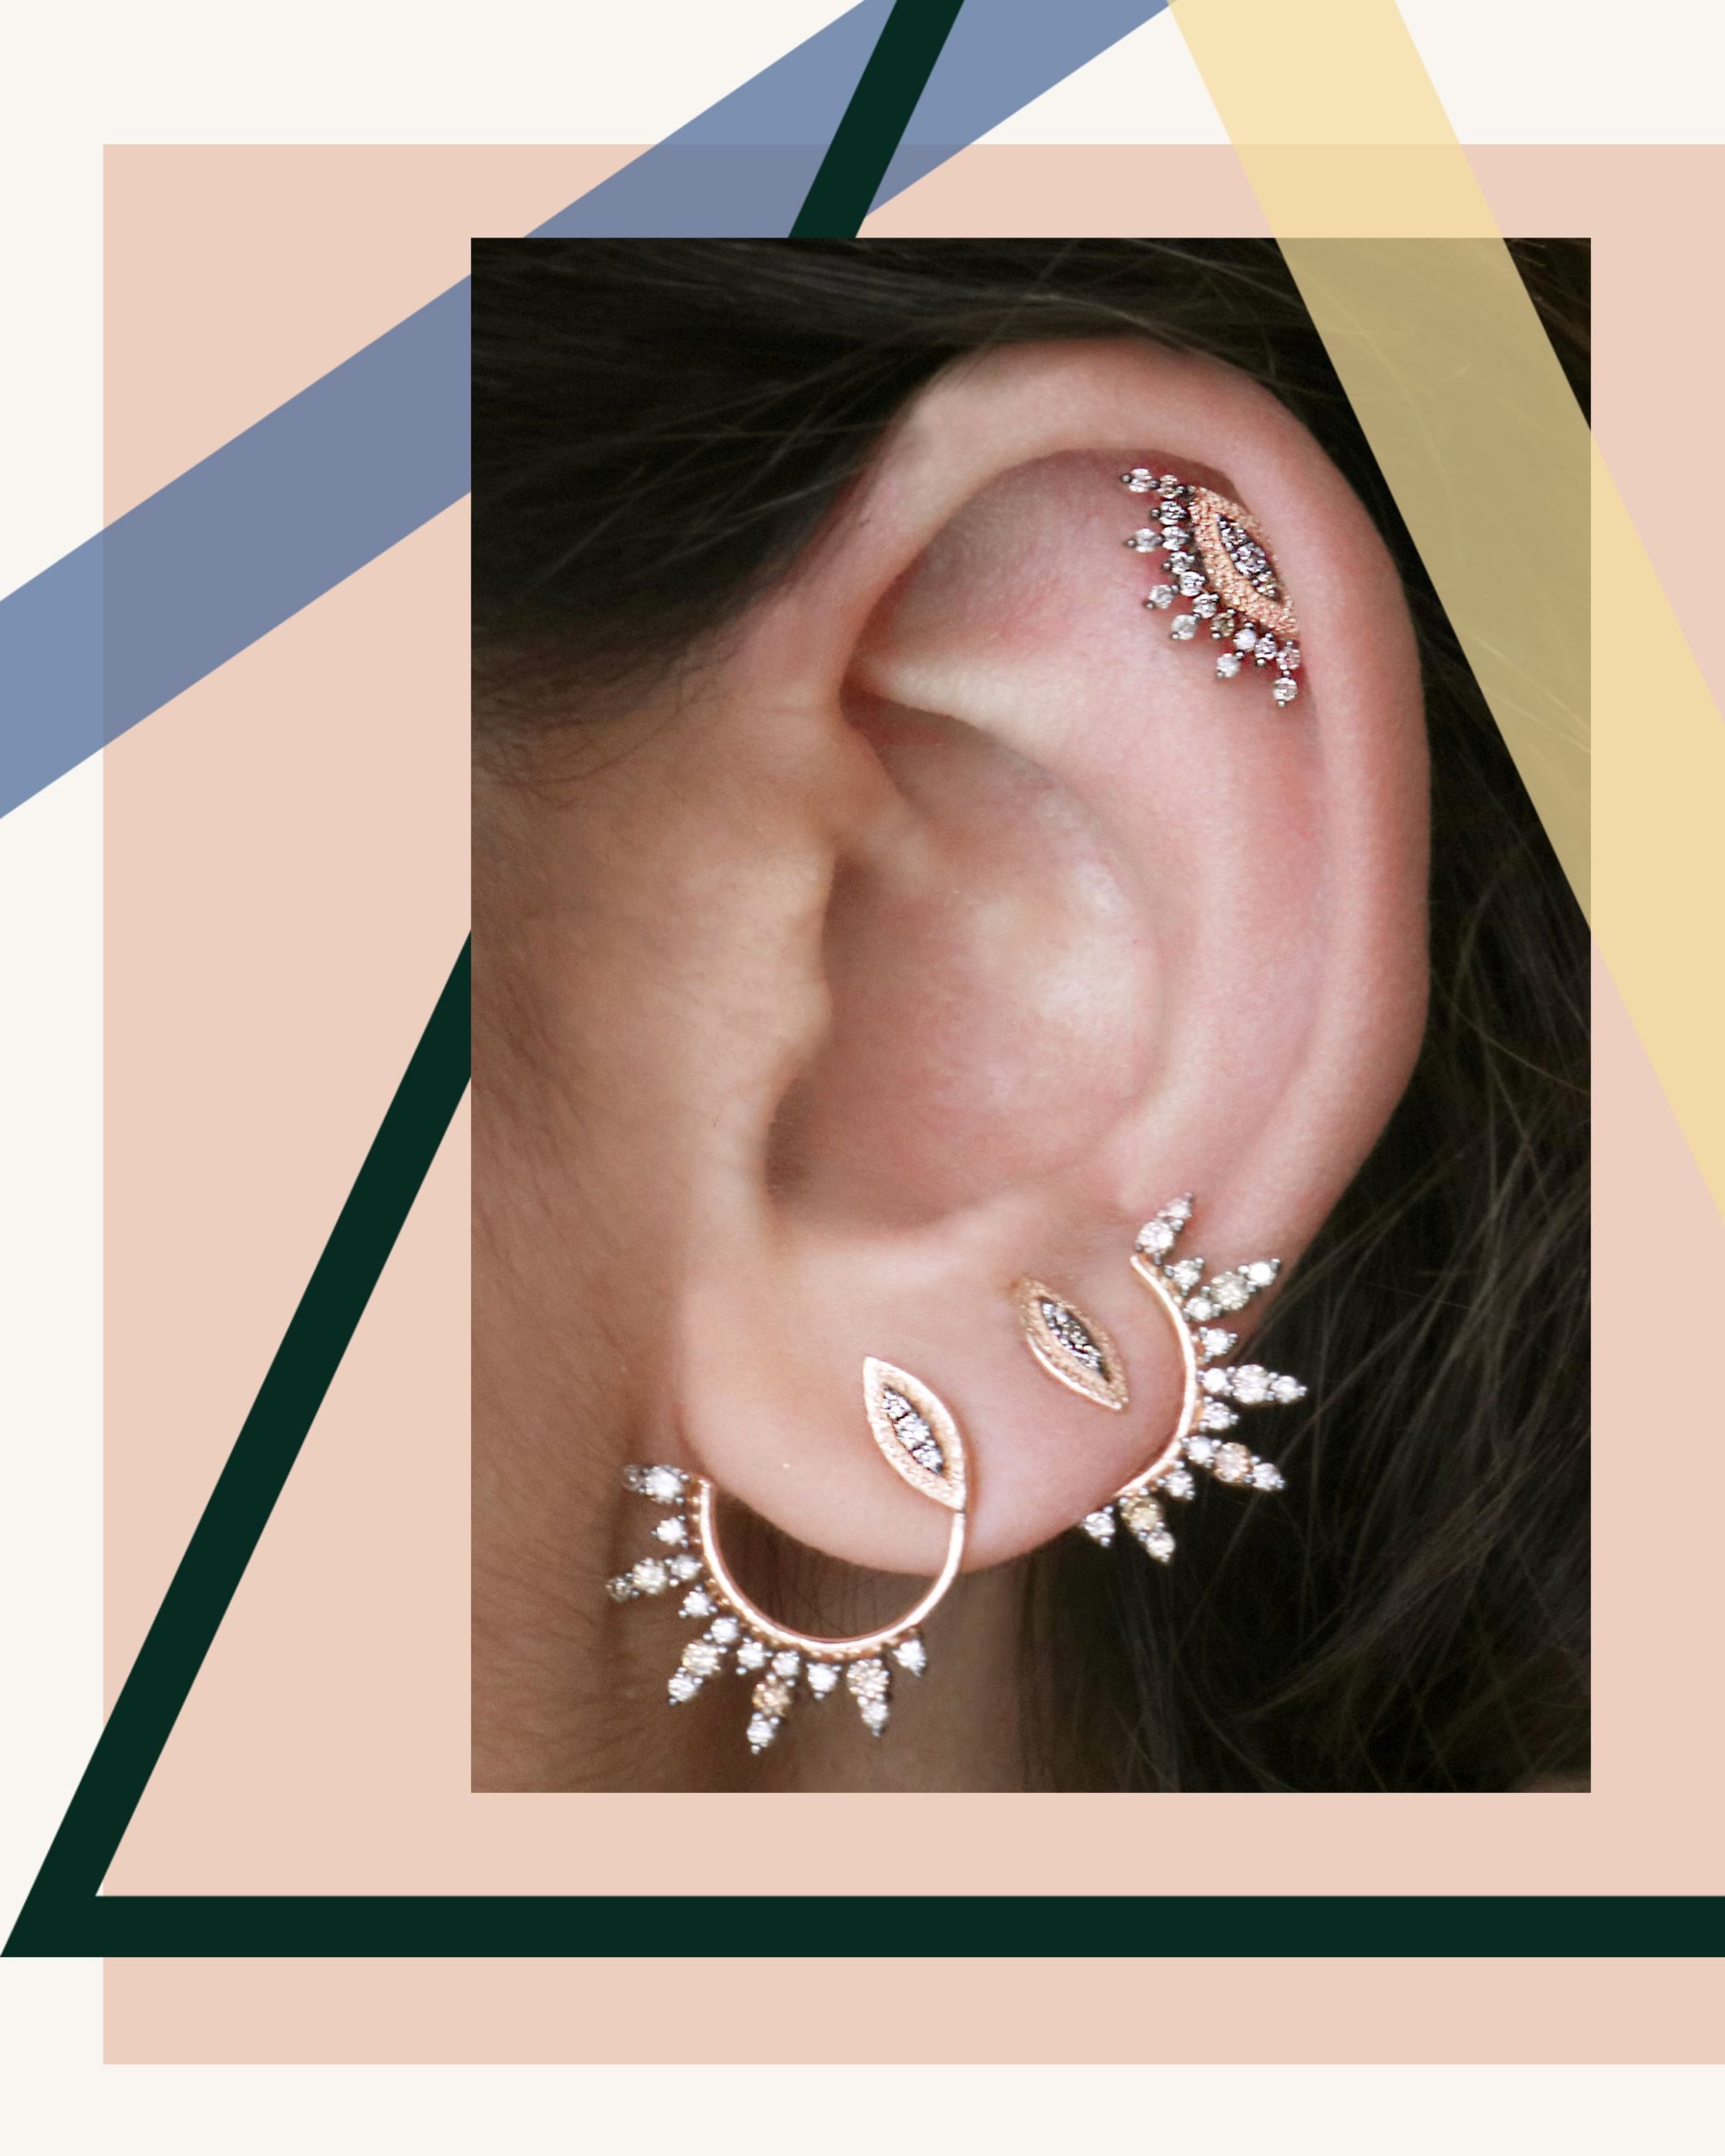 Eye circles diamond stud earrings in rose gold by Kismet by Milka